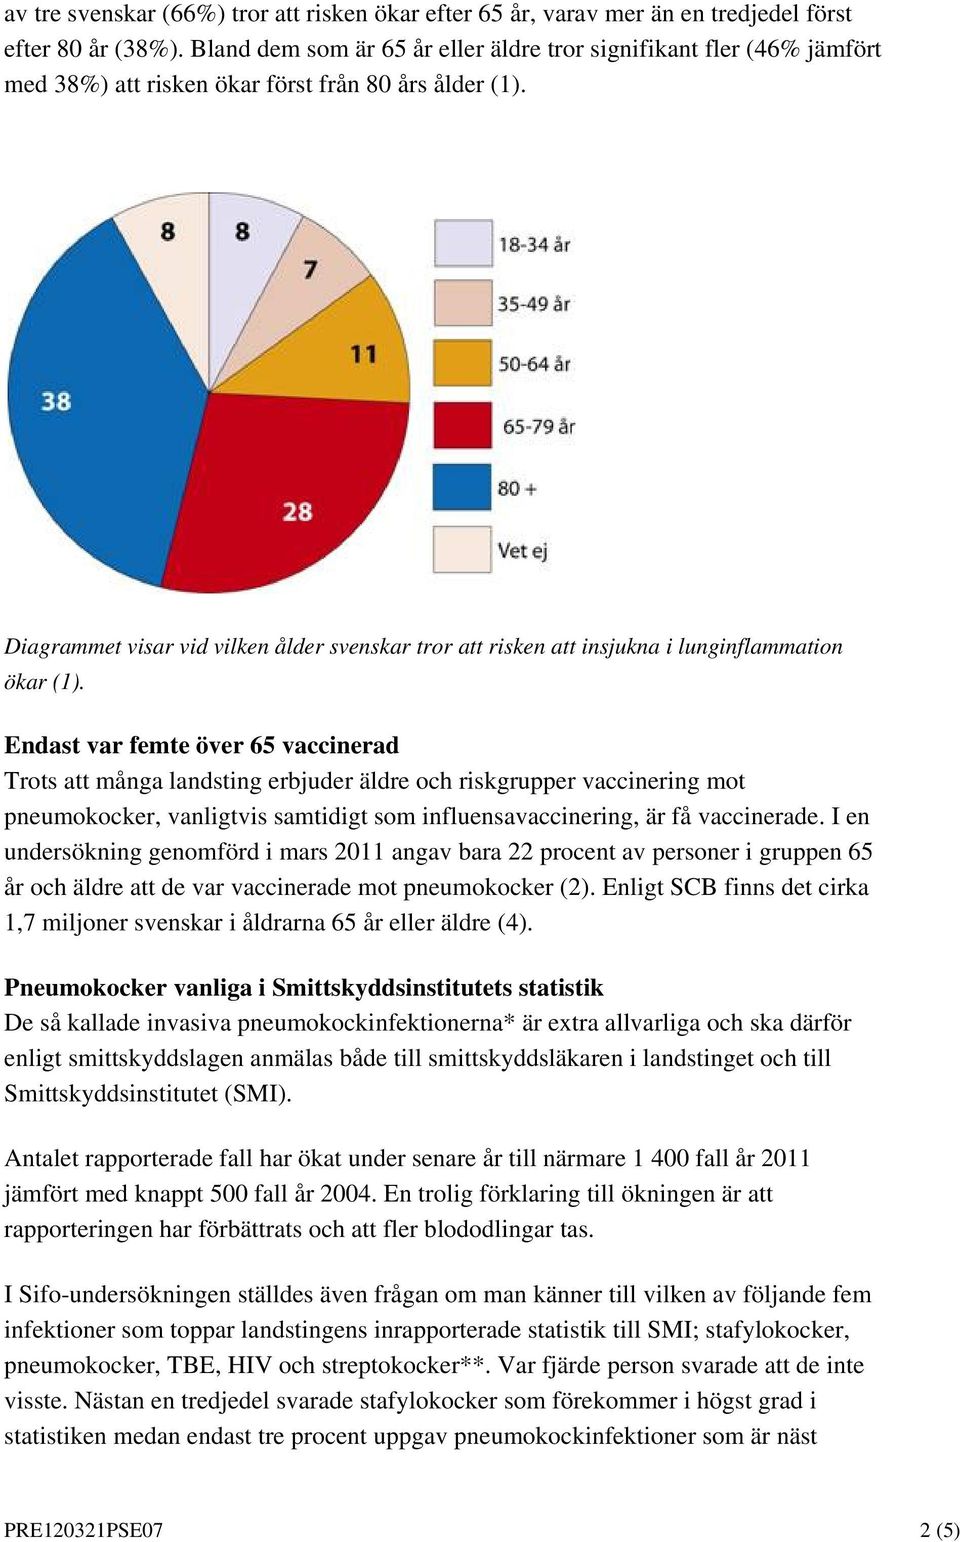 Diagrammet visar vid vilken ålder svenskar tror att risken att insjukna i lunginflammation ökar (1).